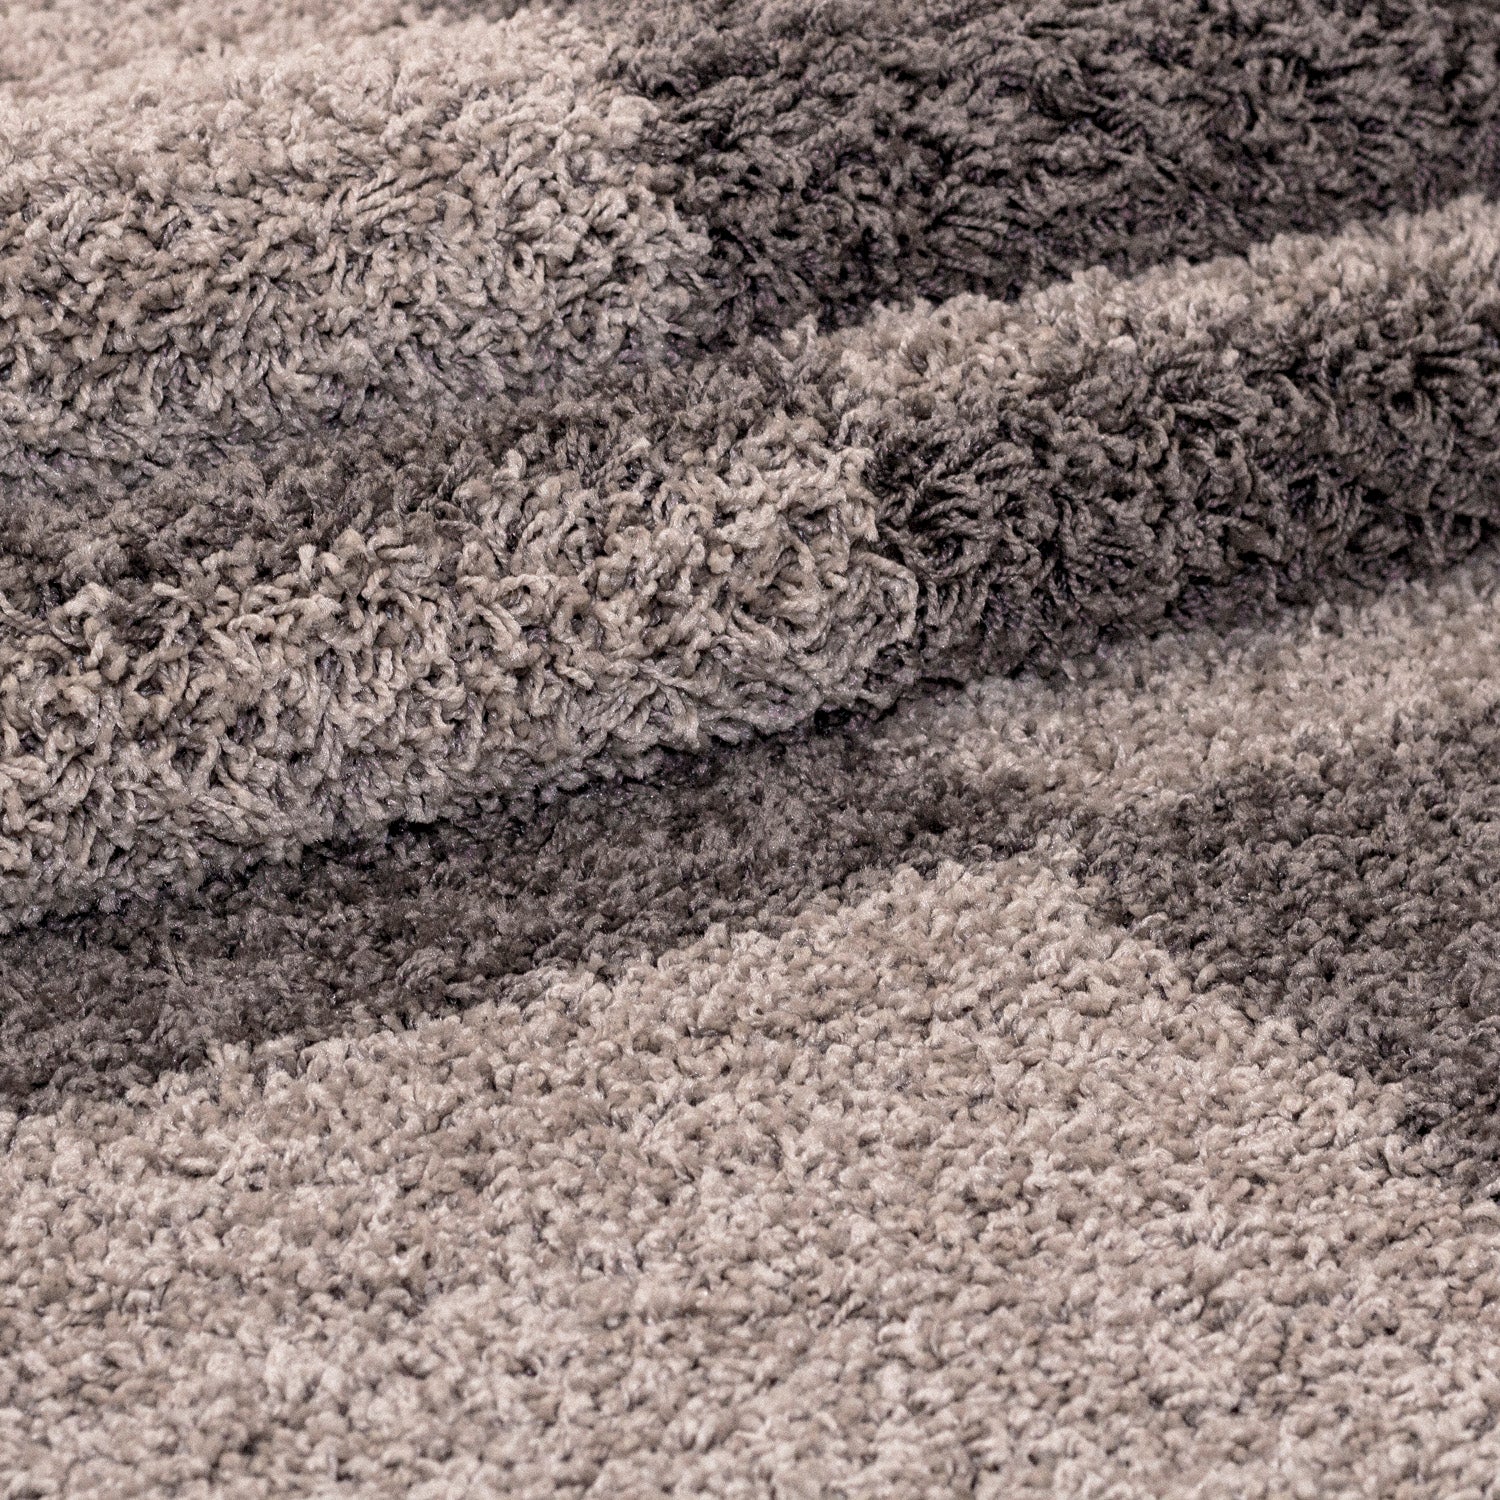 Bordure de lit tapis shaggy à poils longs set de 3 pièces à carreaux beige taupe